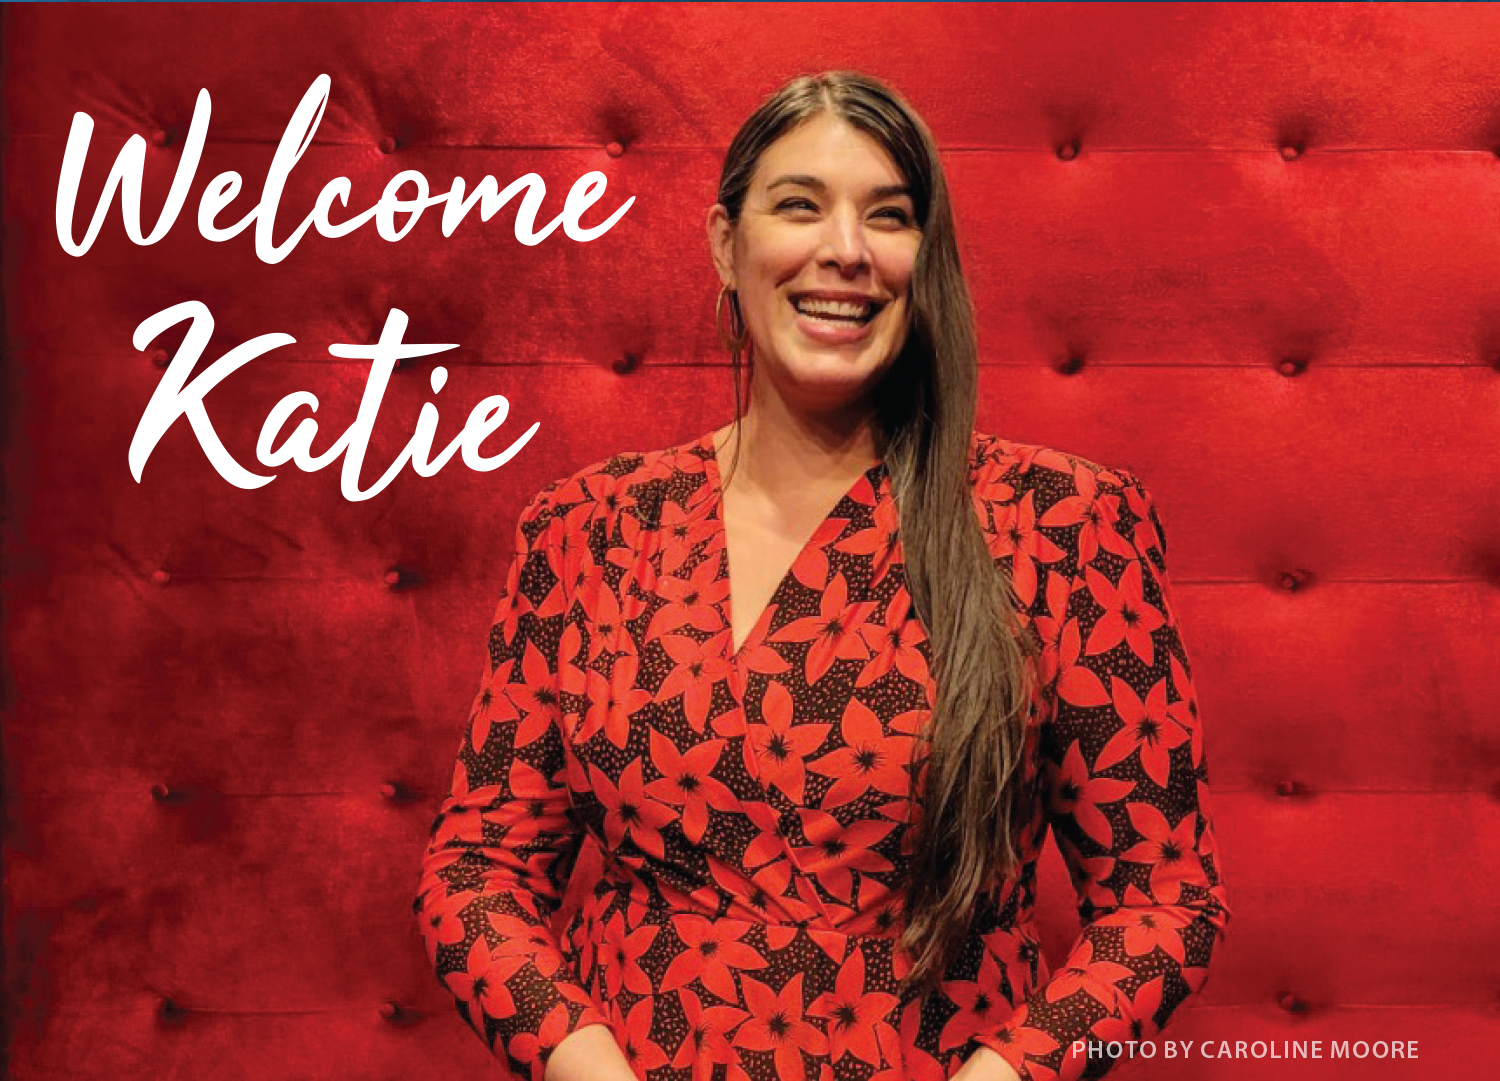 Welcome Katie